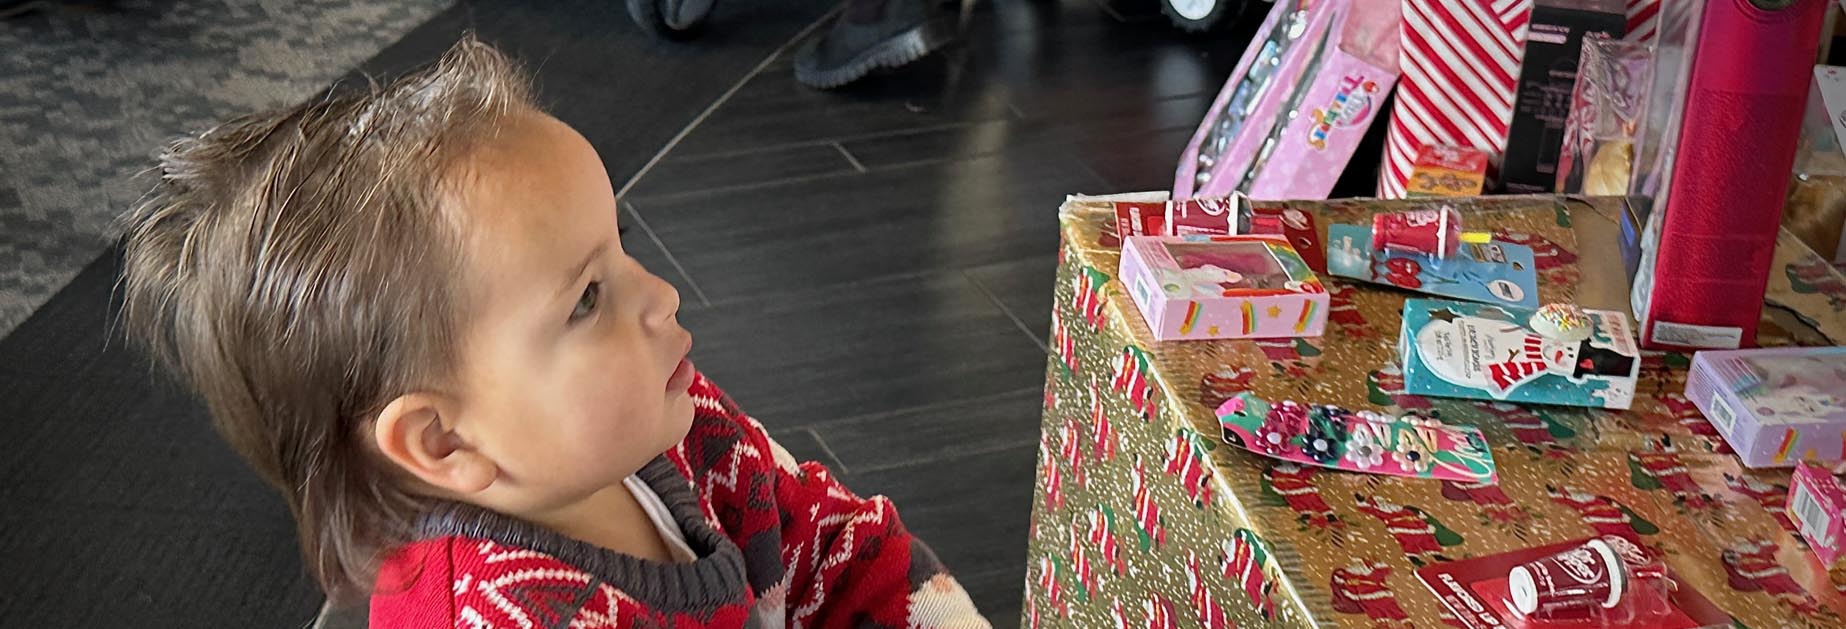 Un jeune enfant à côté de cadeaux emballés